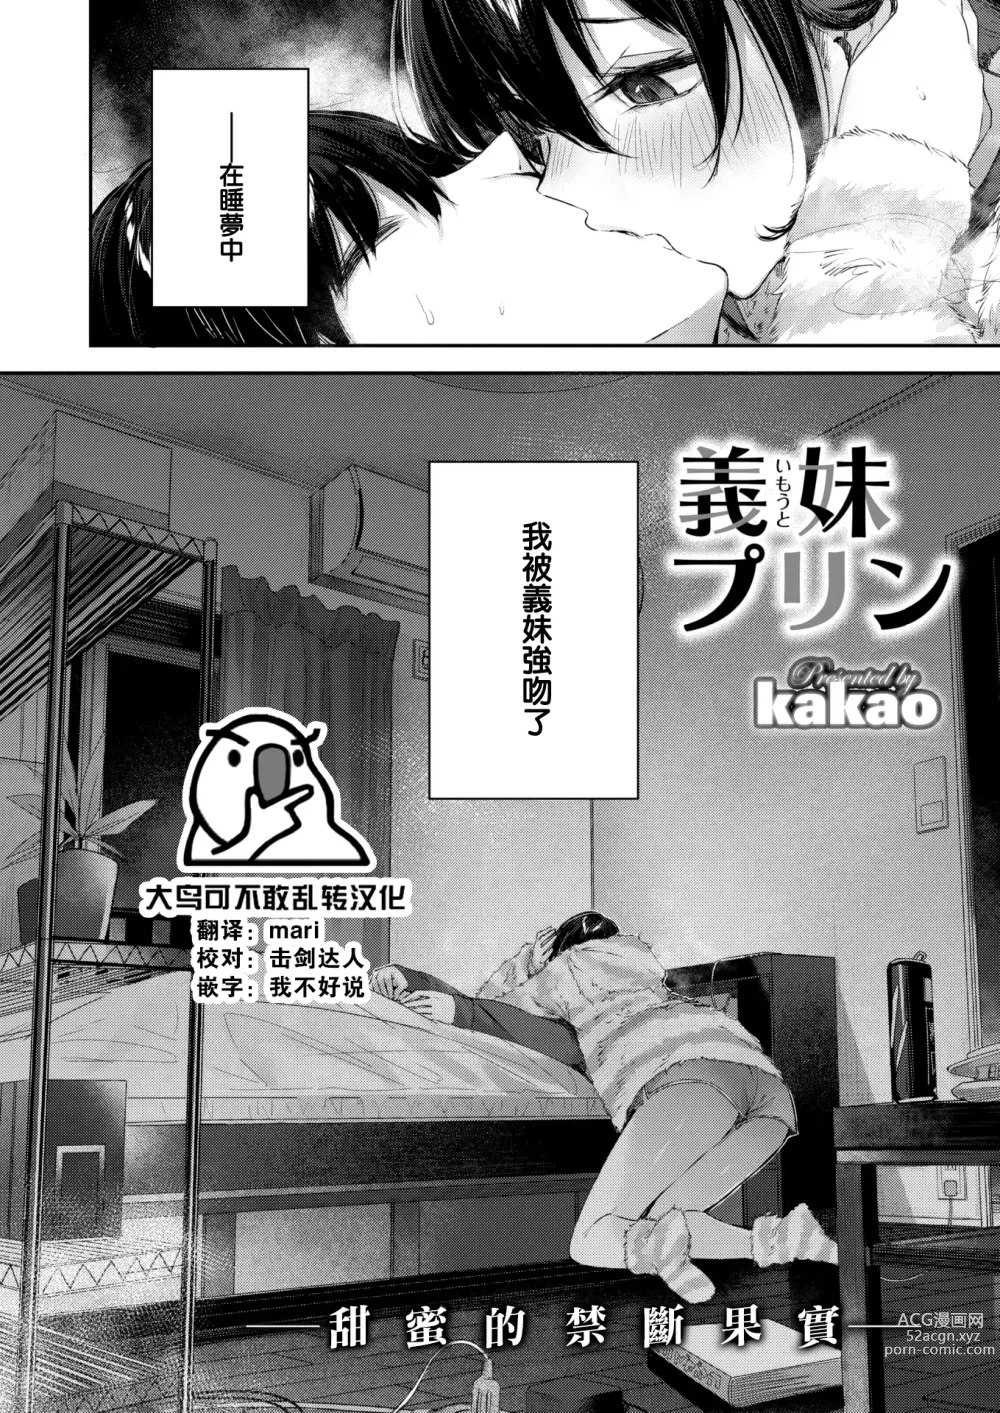 Page 3 of manga Imouto Pudding